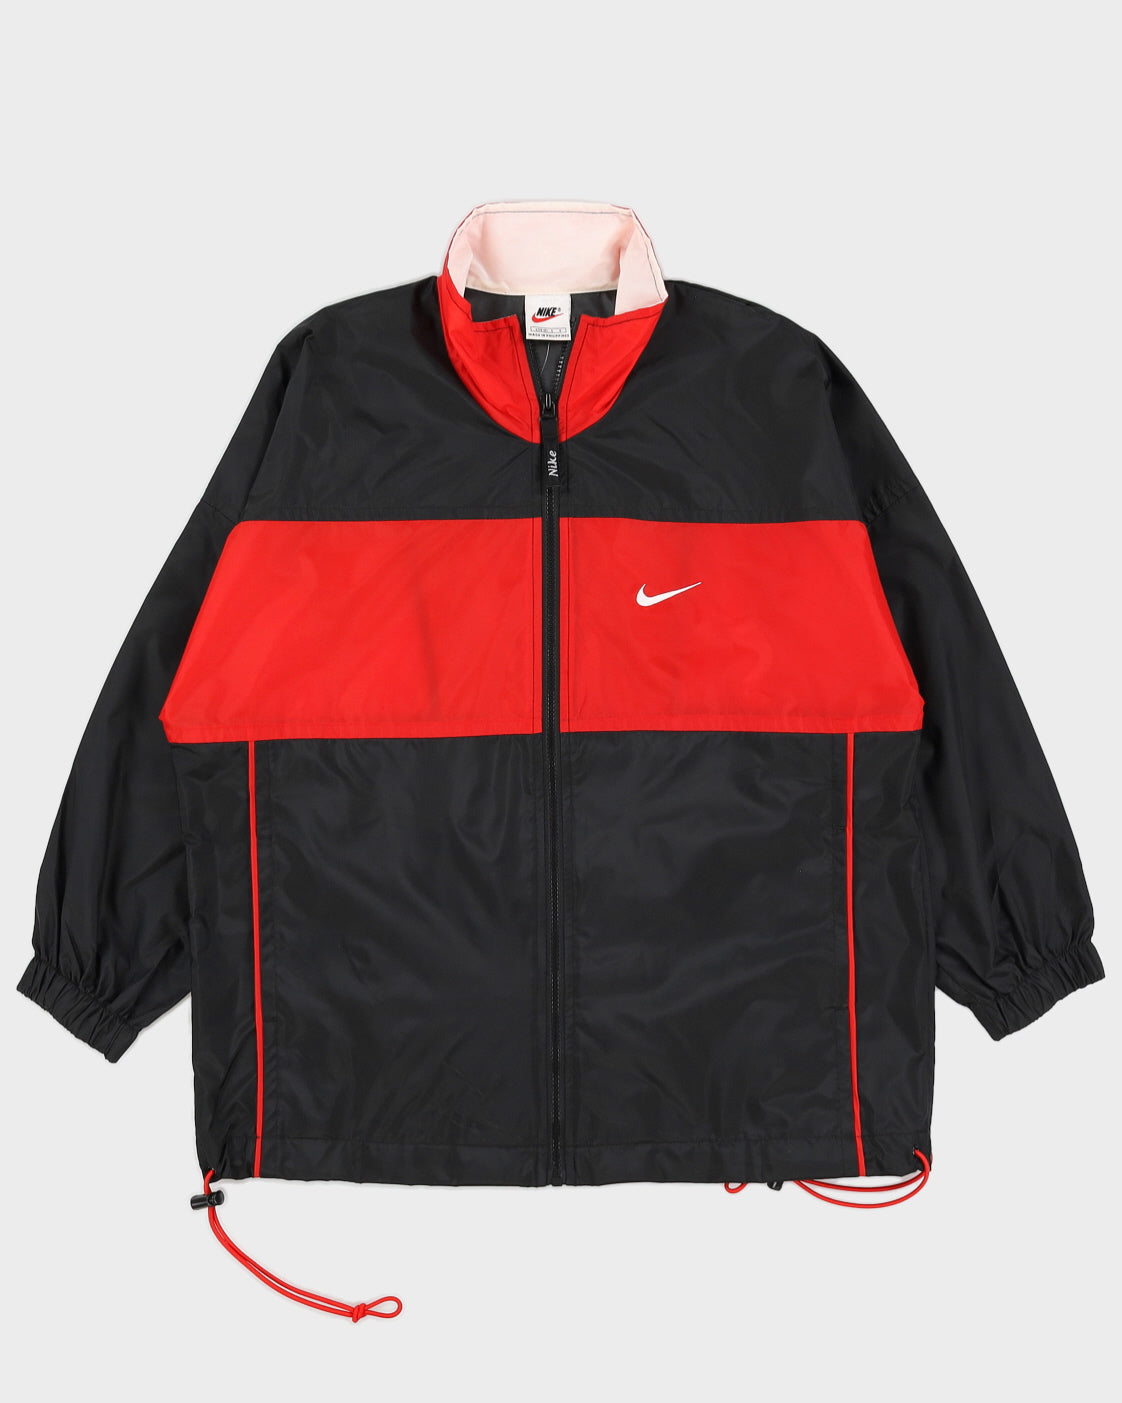 Veste Nike noir / rouge vintage des années 90 - m – Rokit